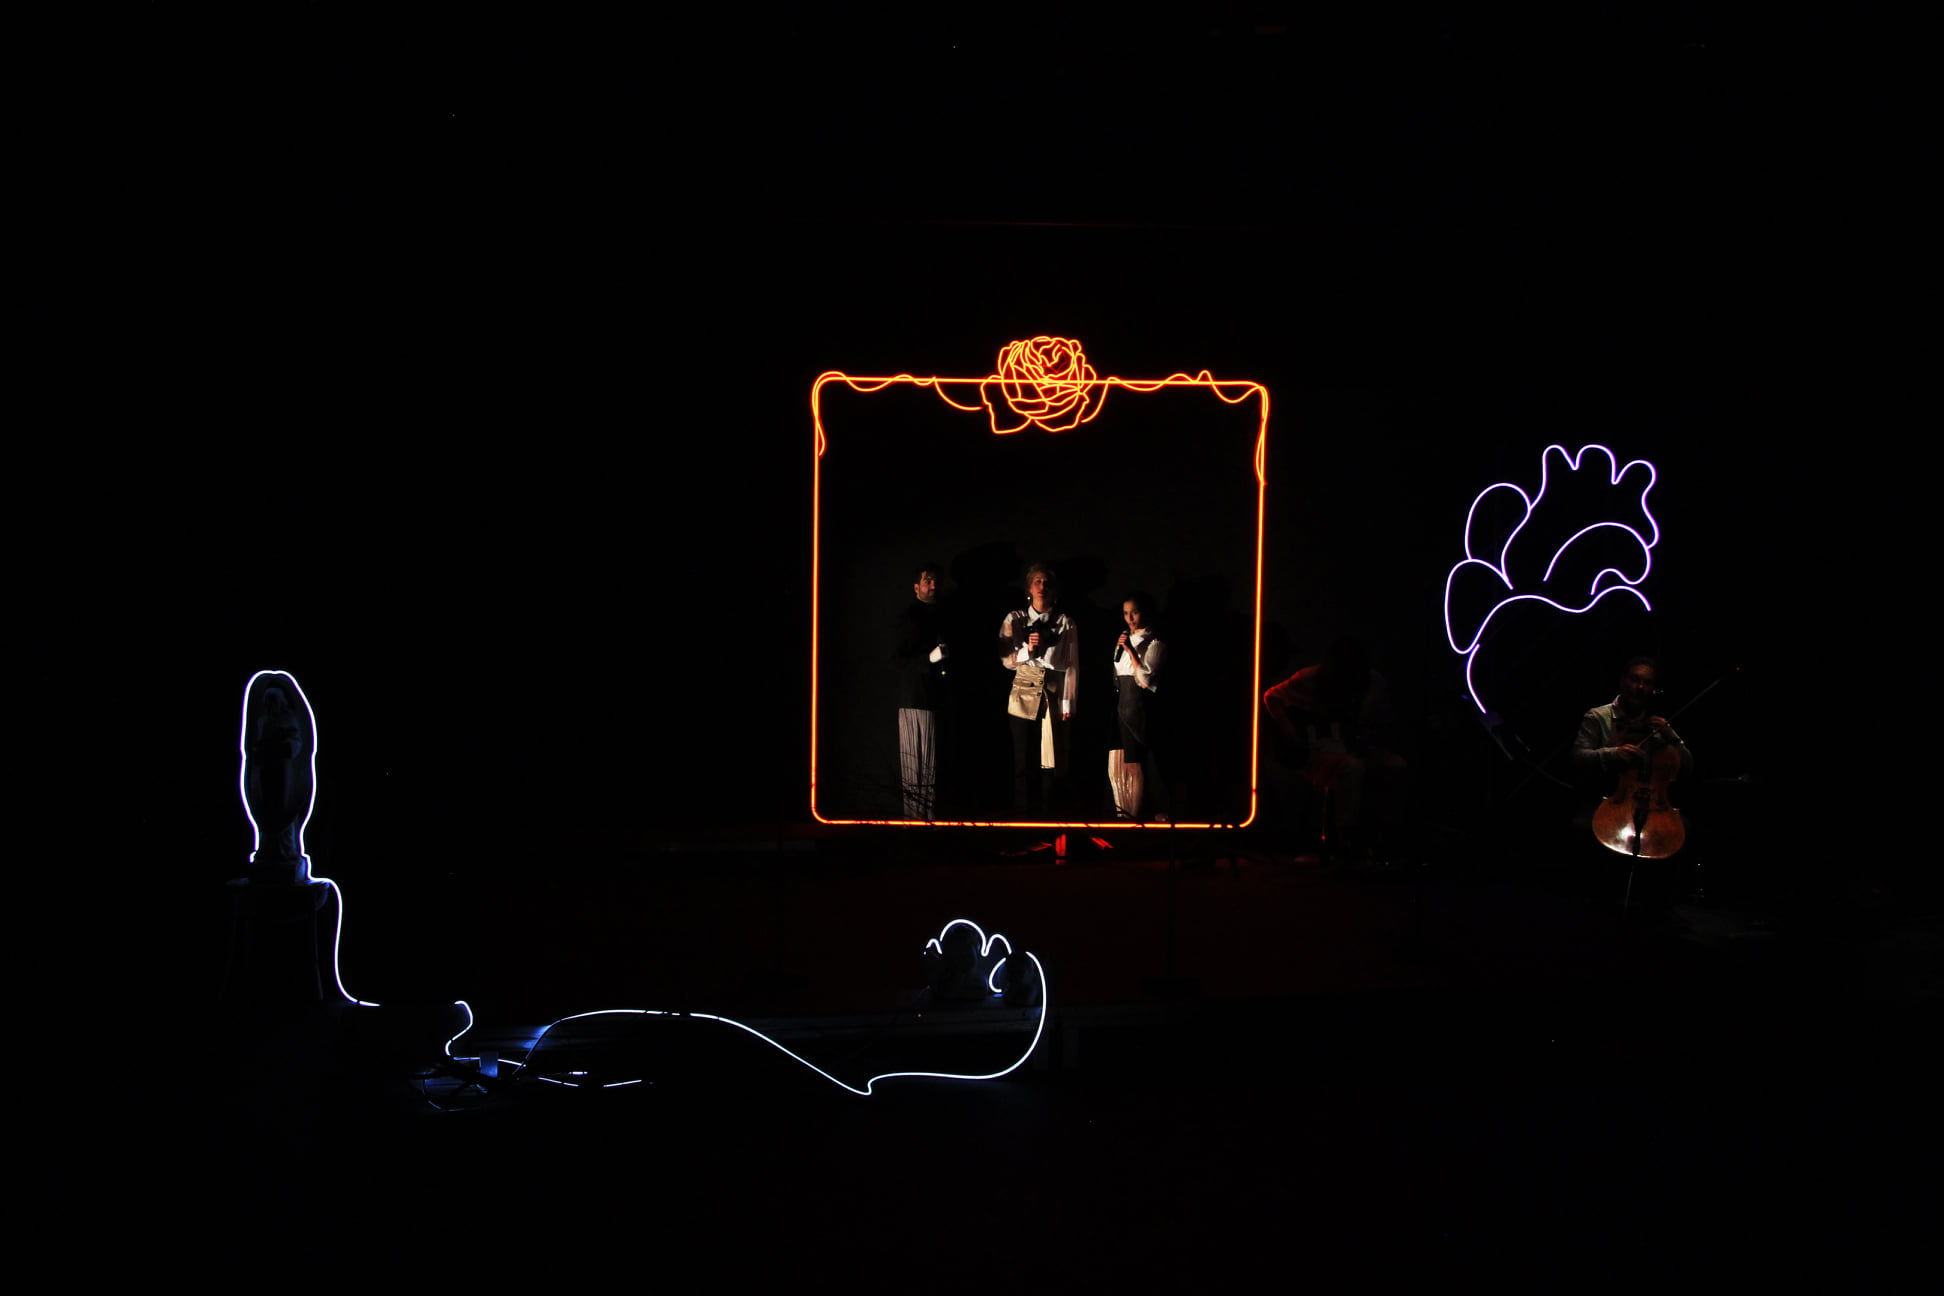 Το Σφαγείο του Έρωτα, σε σκηνοθεσία Θοδωρή Γκόνη στο Θέατρο της Οδού Κυκλάδων